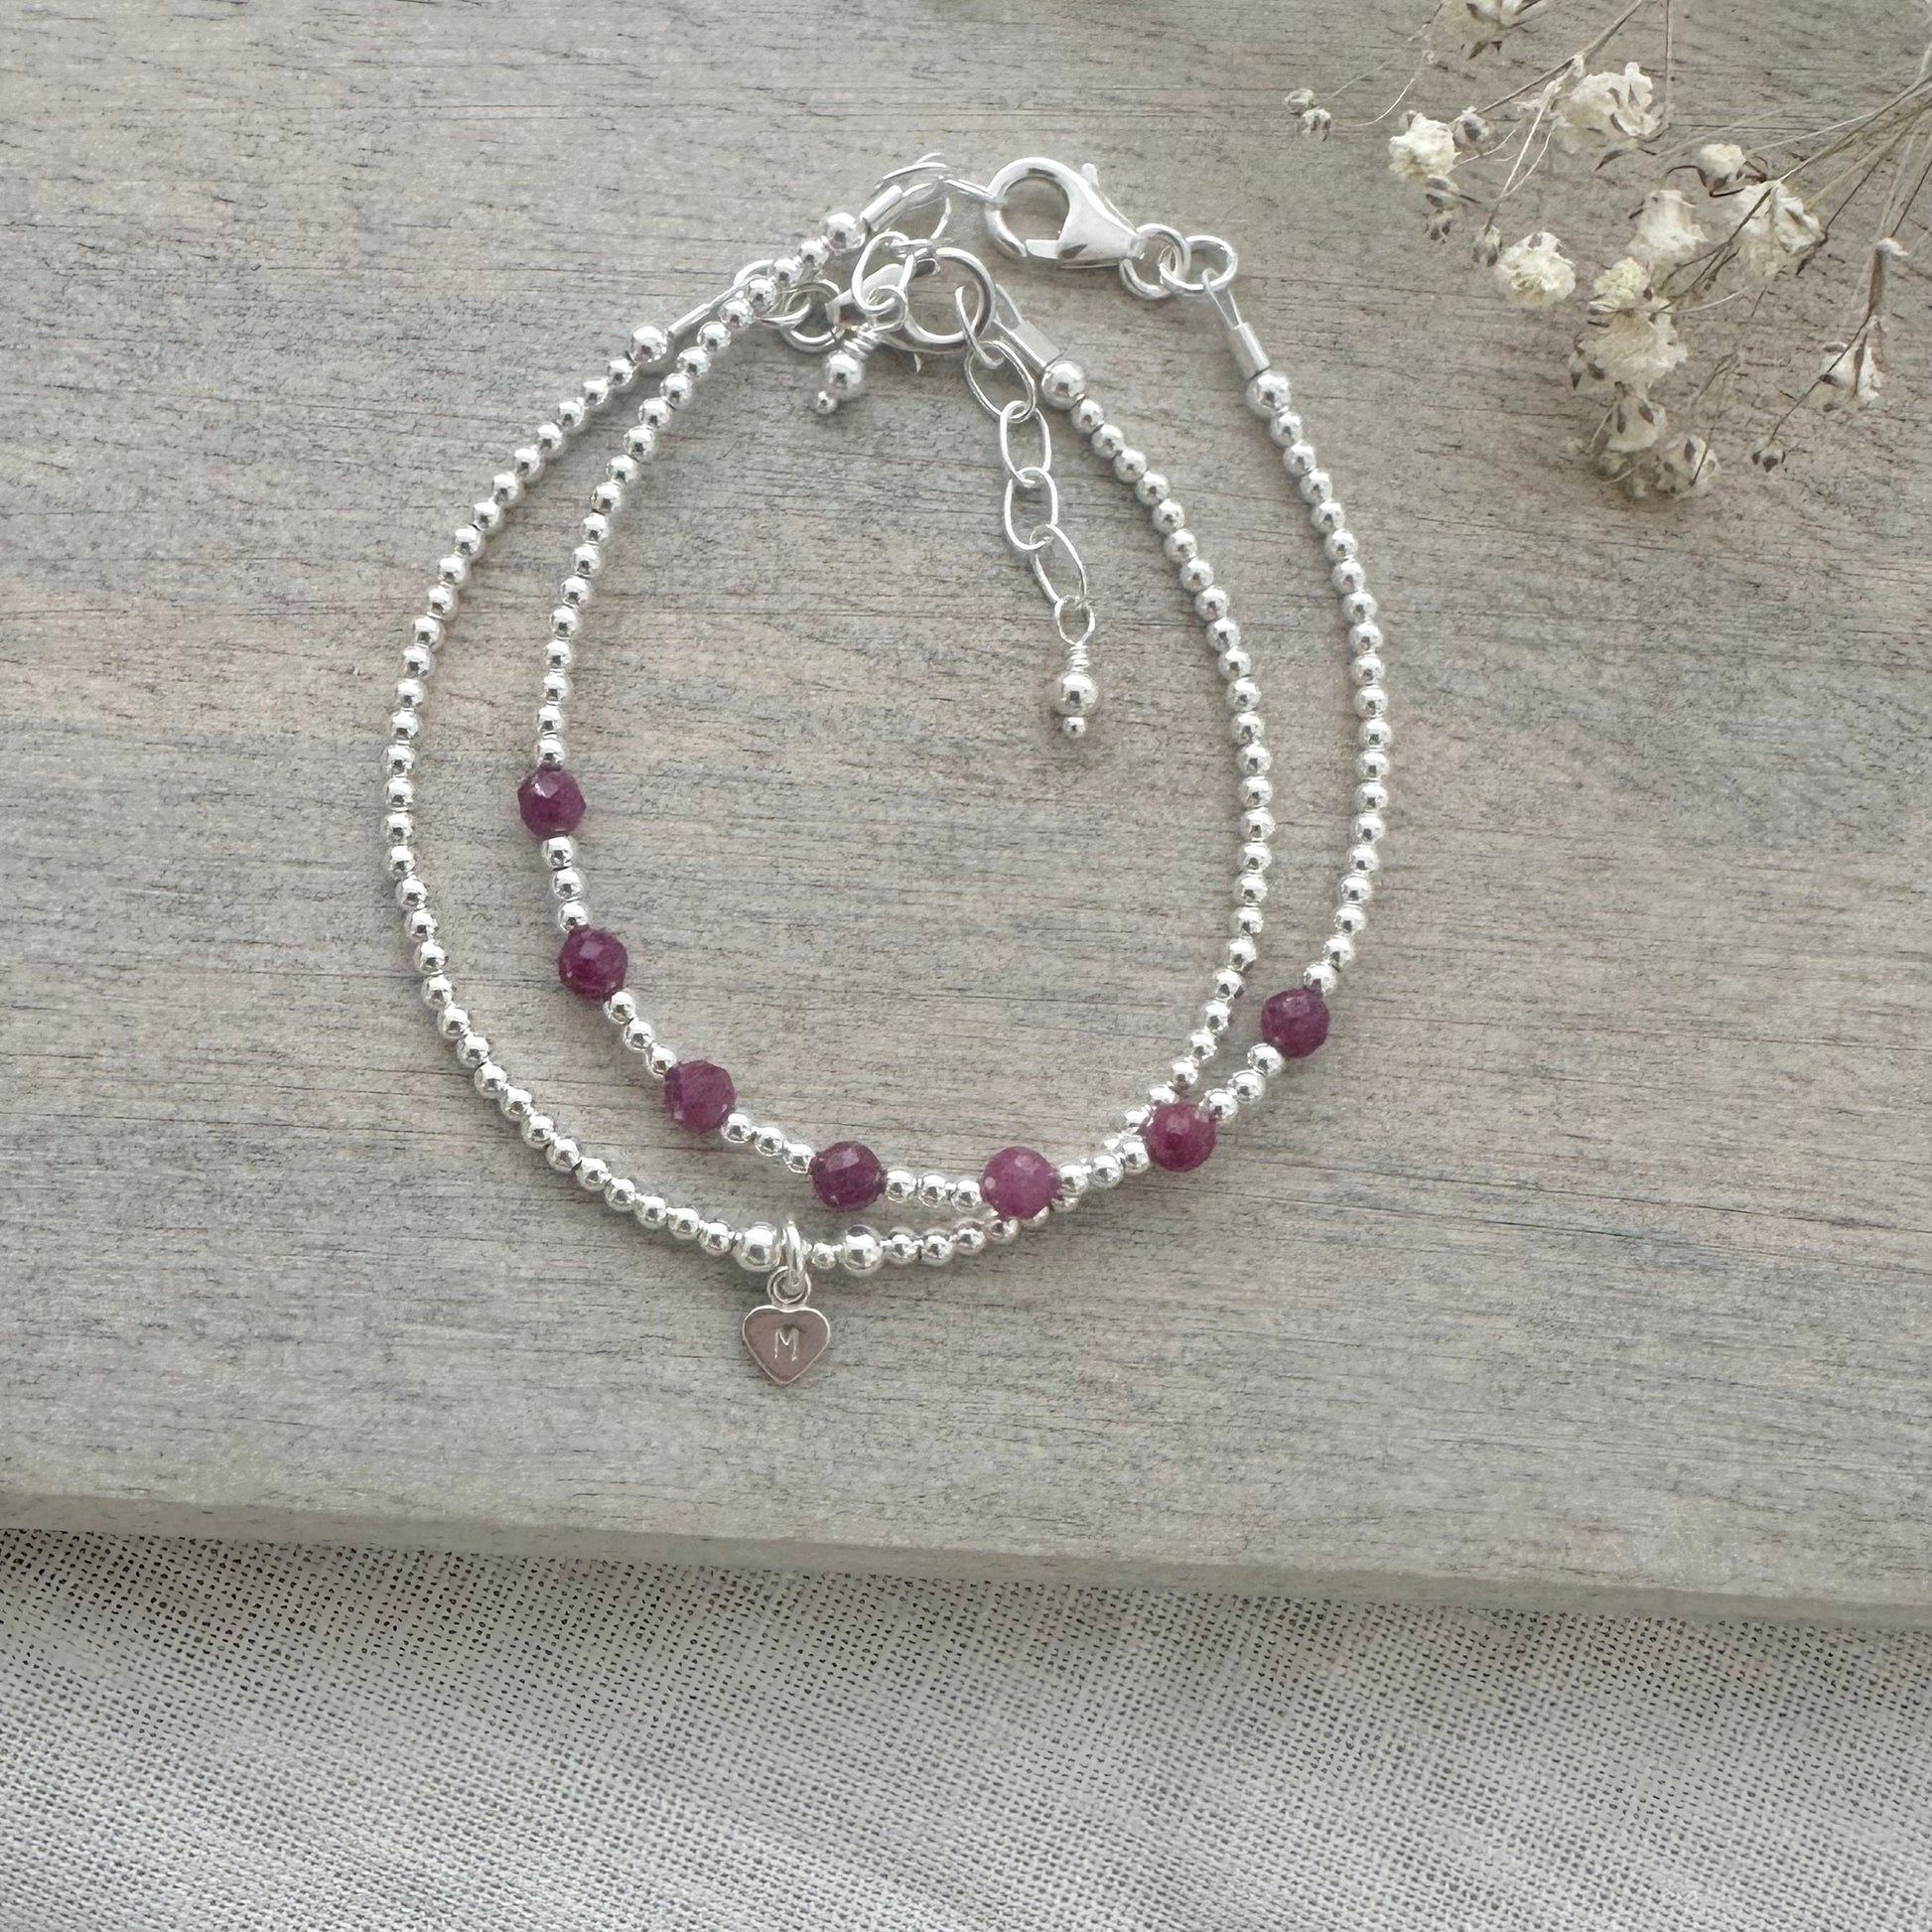 Personalised Ruby Bracelet Set, July Birthstone Jewellery